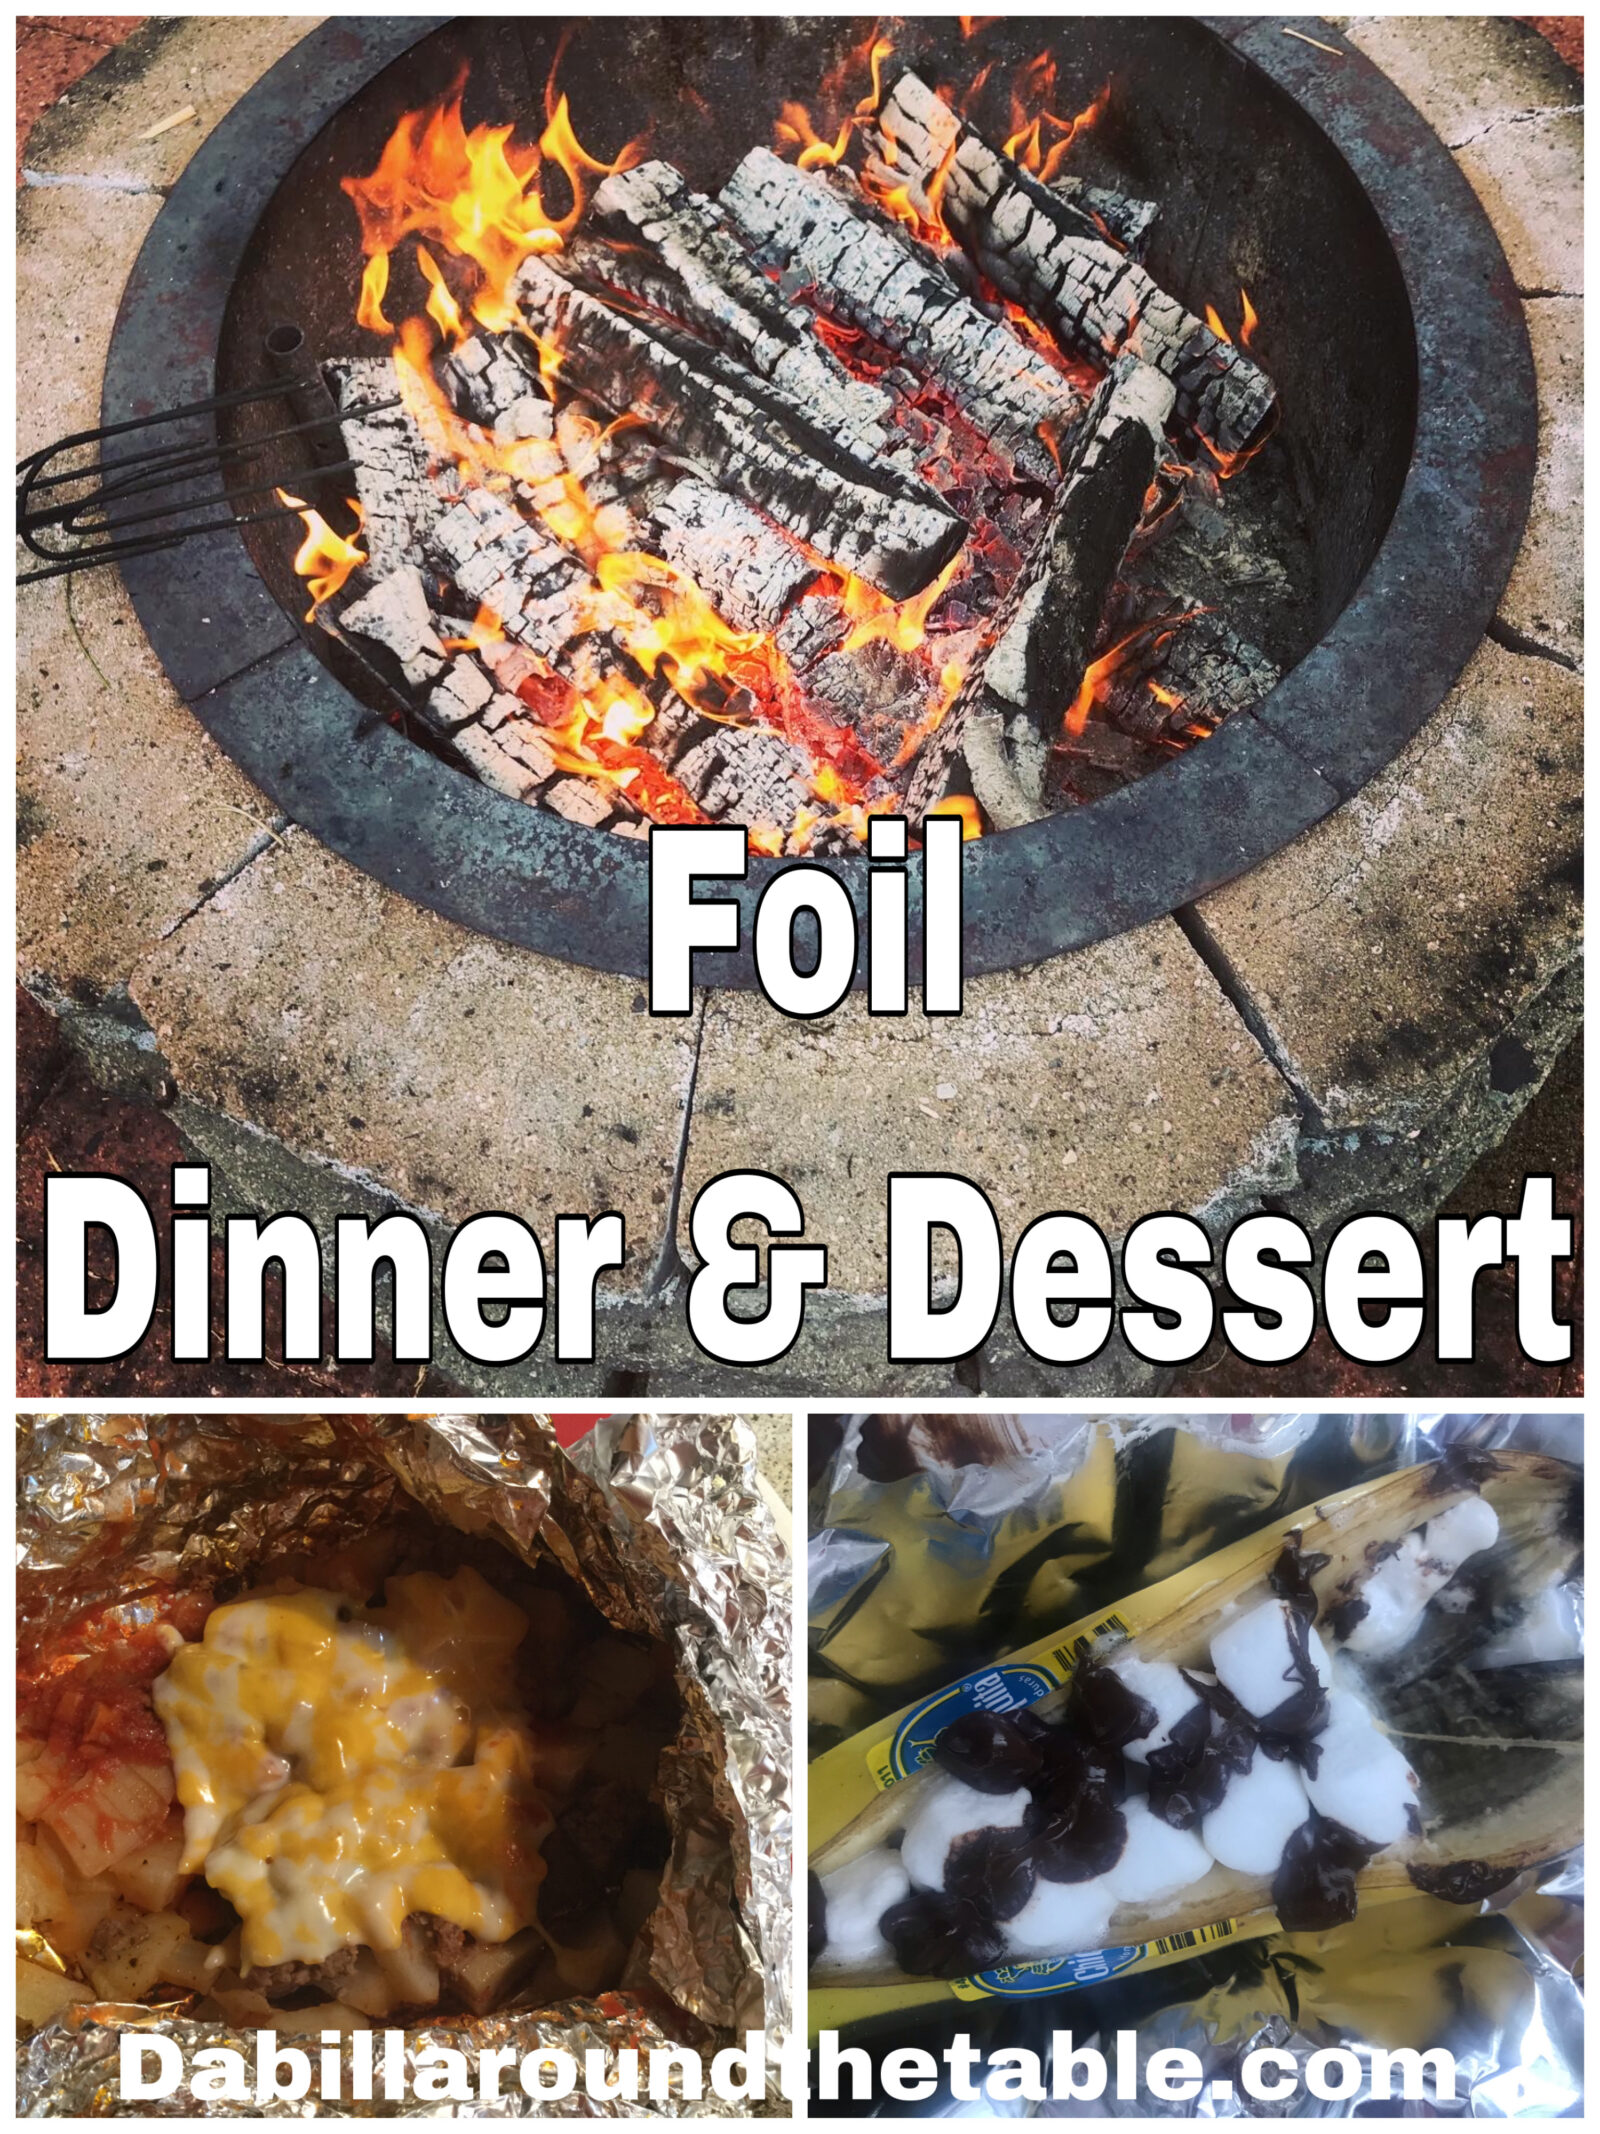 Foil Dinner and Dessert